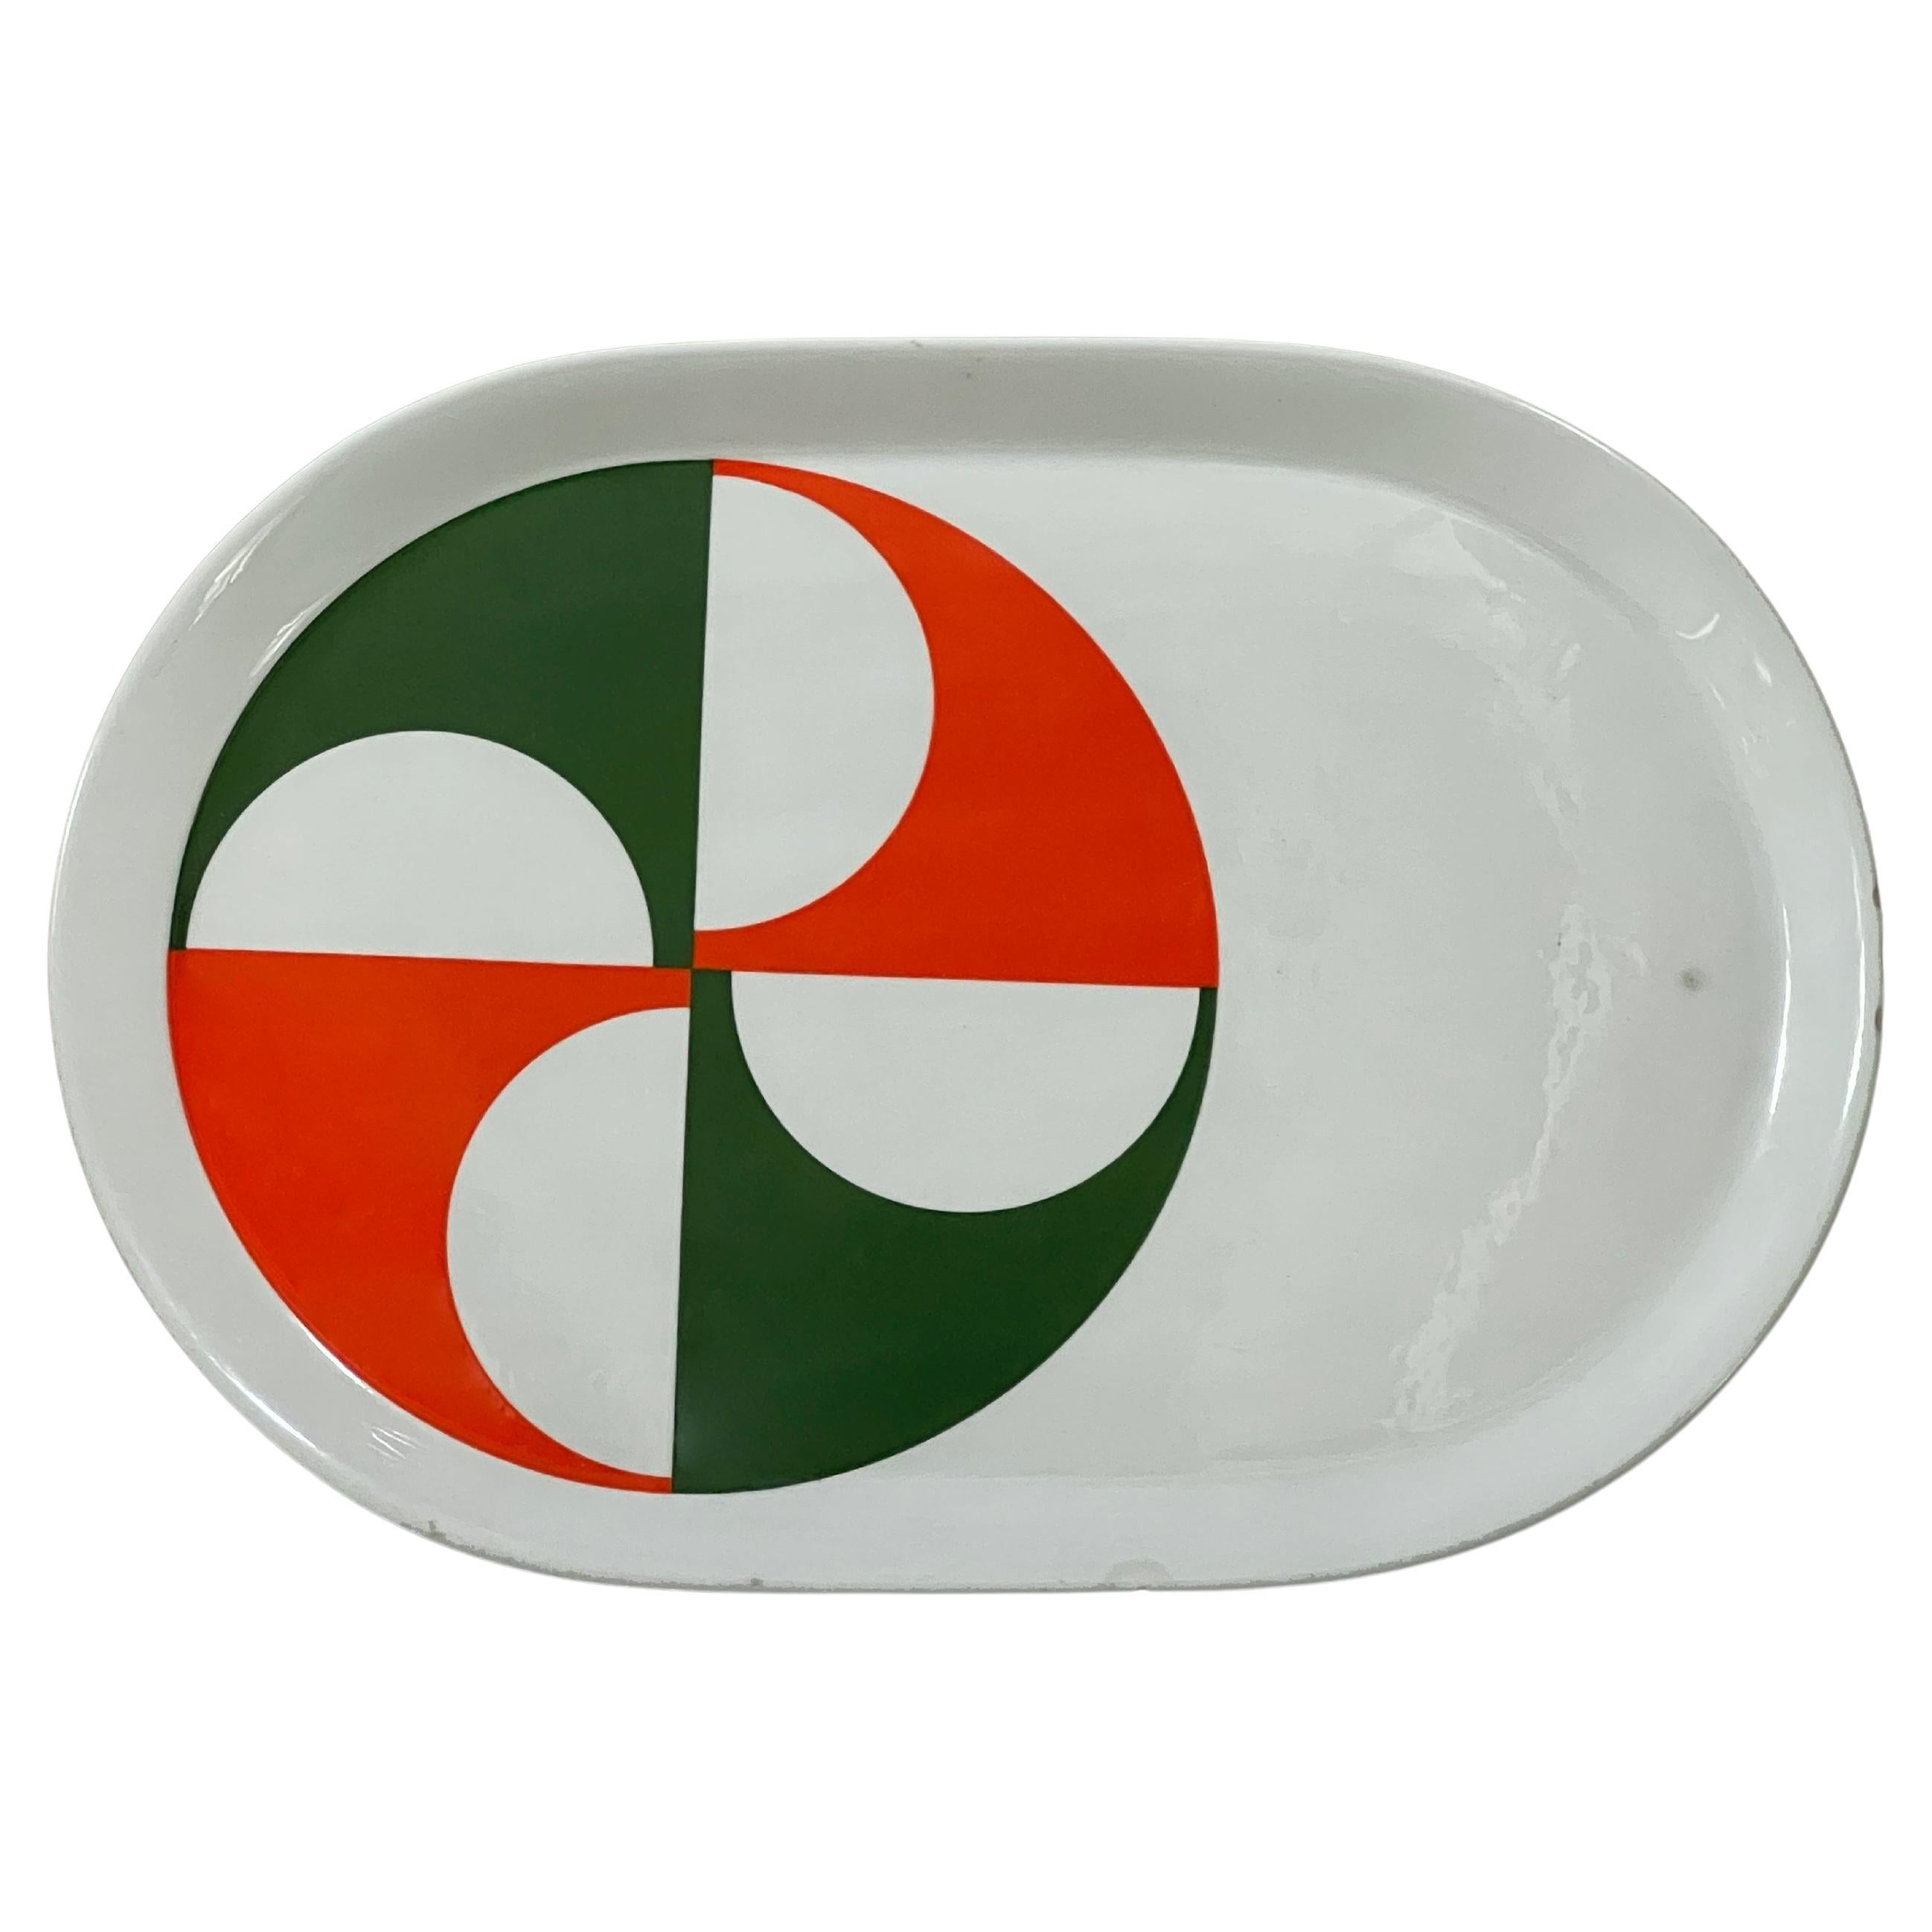 "Fantasia Italiana" serving plate by Gio Ponti for Ceramiche Franco Pozzi, 1960s